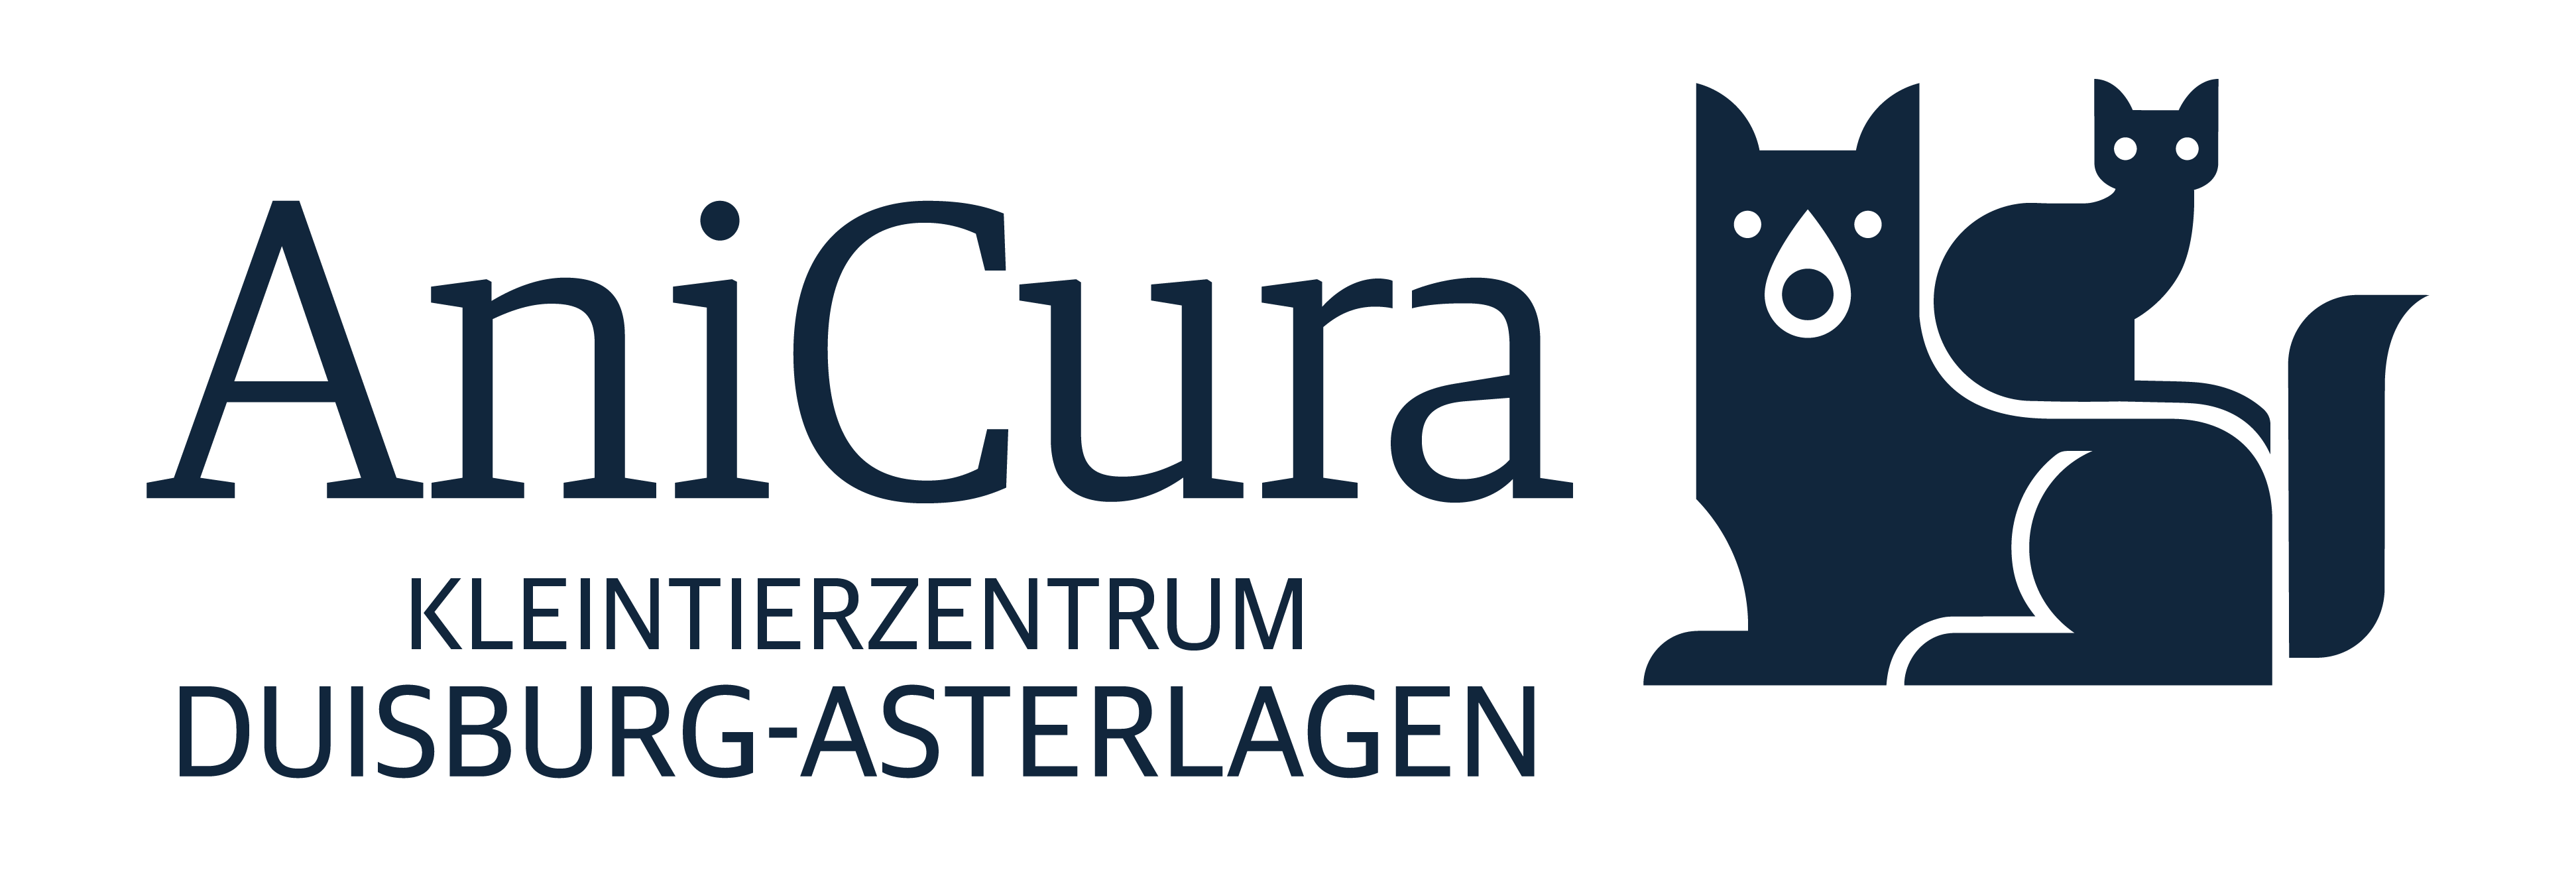 Kleintierzentrum AniCura Duisburg-Asterlagen logo